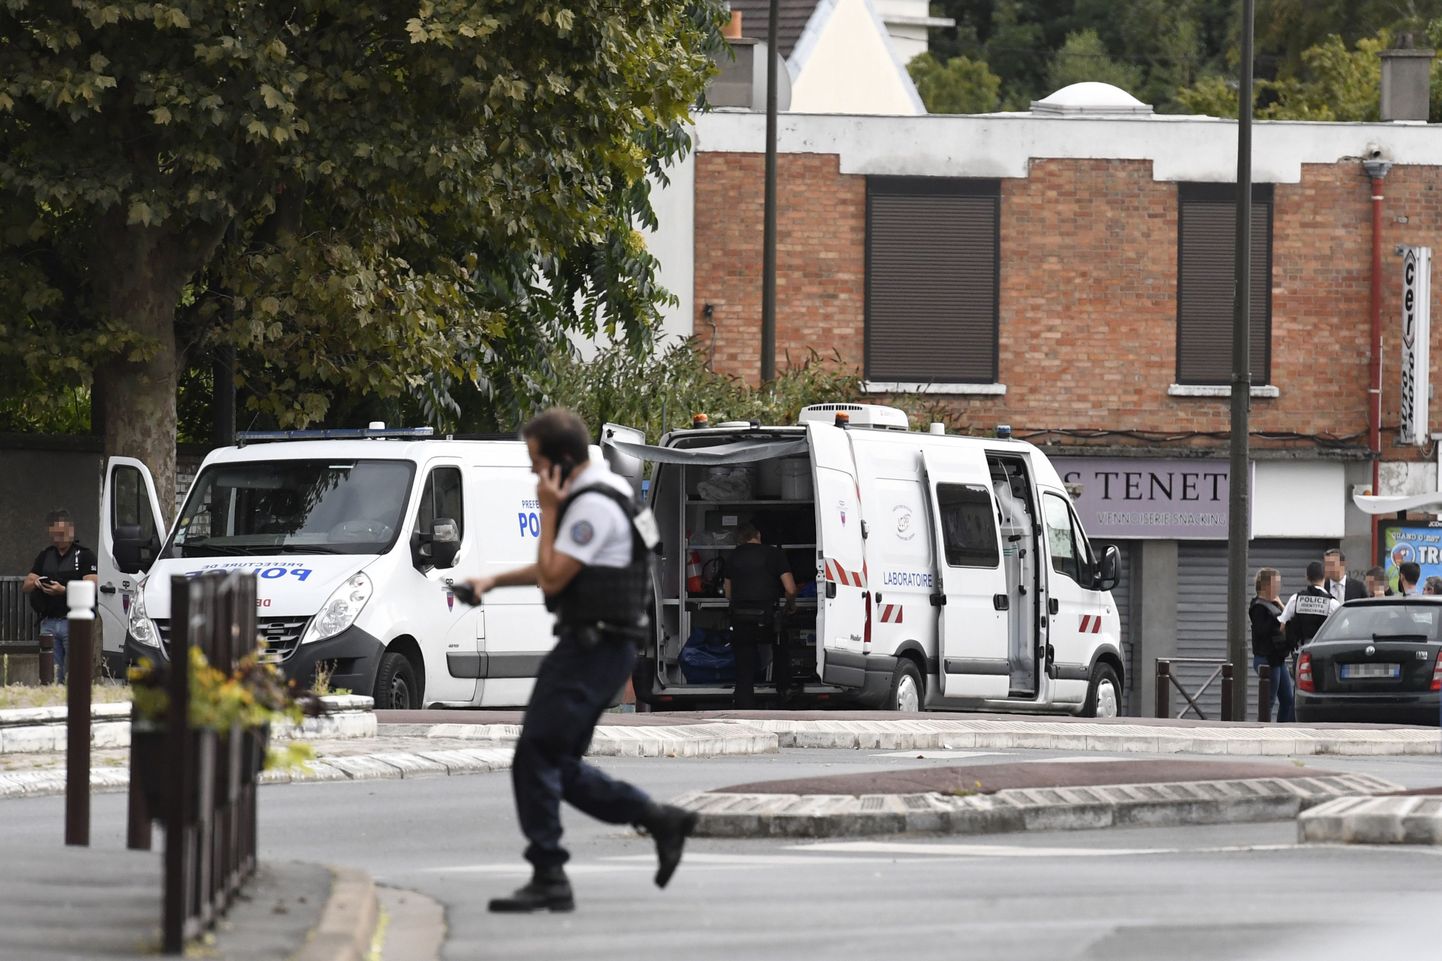 Prantsuse politsei tegutsemas Pariisi eeslinnas Villejuifis, kus leiti ühest korterist kasutusvalmis lõhkeainet TATP.